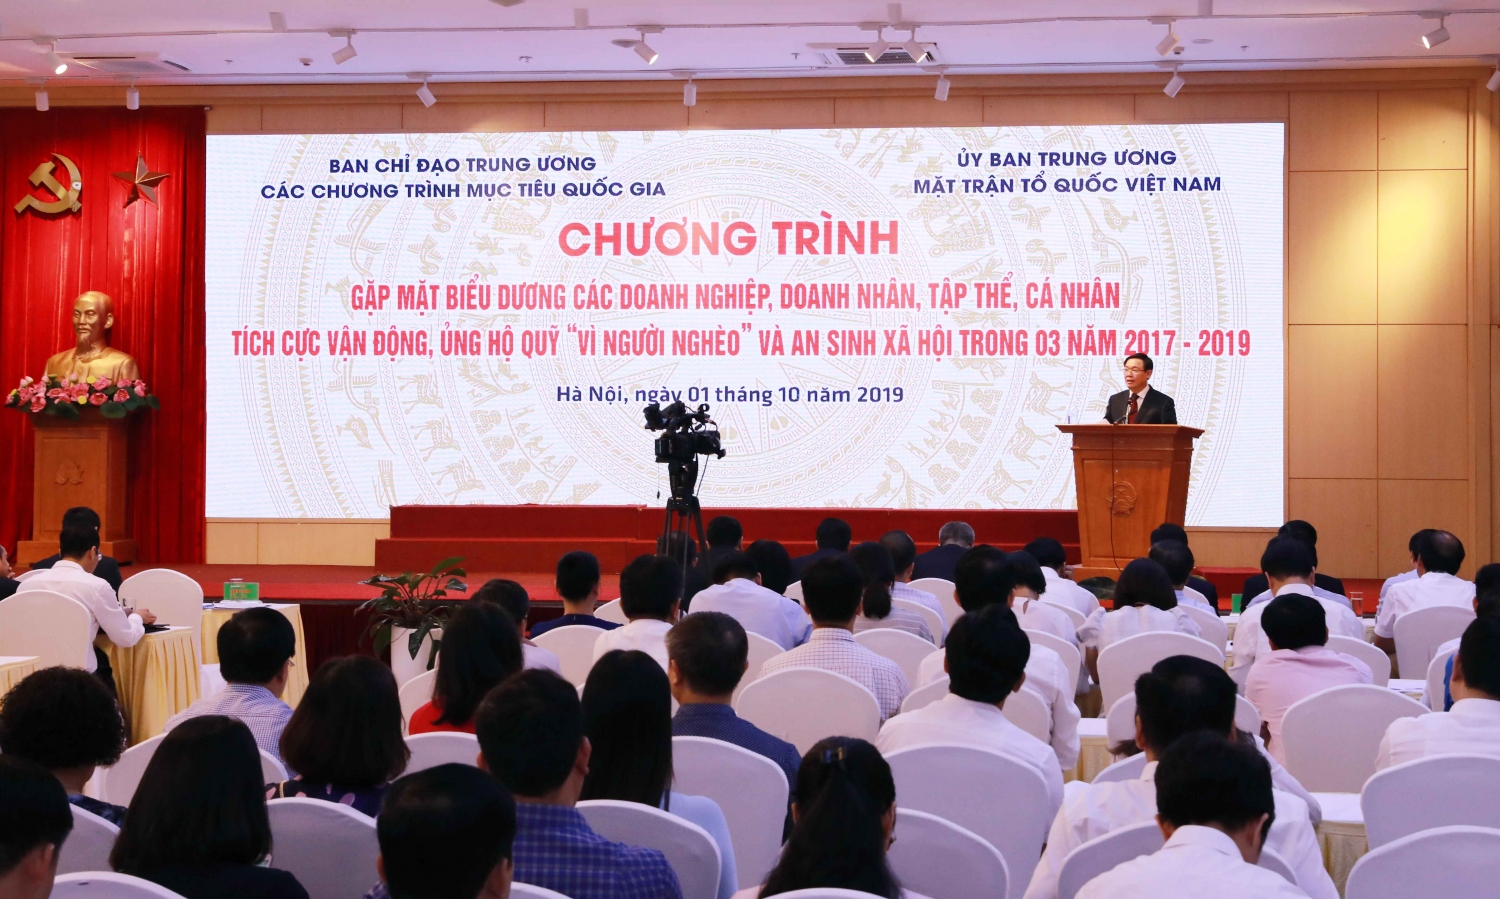 Phó Thủ tướng Vương Đình Huệ gặp mặt các tập thể, cá nhân tích cực ủng hộ quỹ "Vì người nghèo"